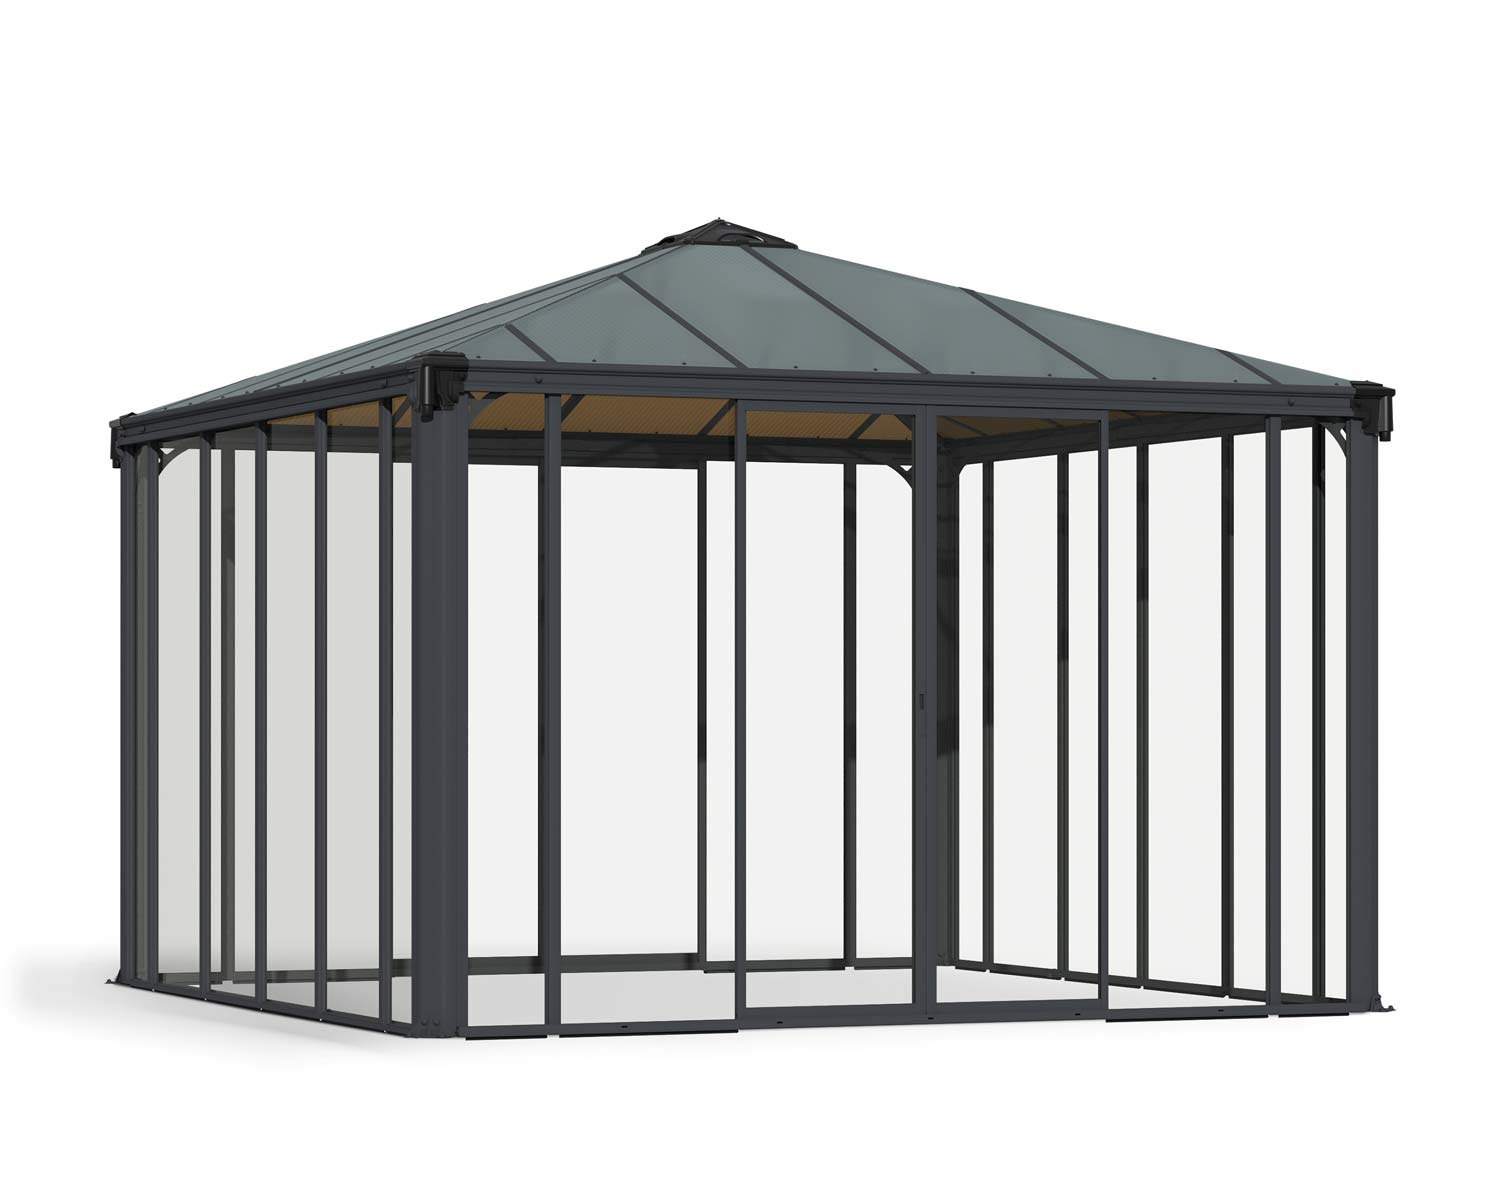 Enclosed Gazebo Kit Ledro 3600 12 ft. x 12 ft. Grey Structure &amp; Hybrid Glazing